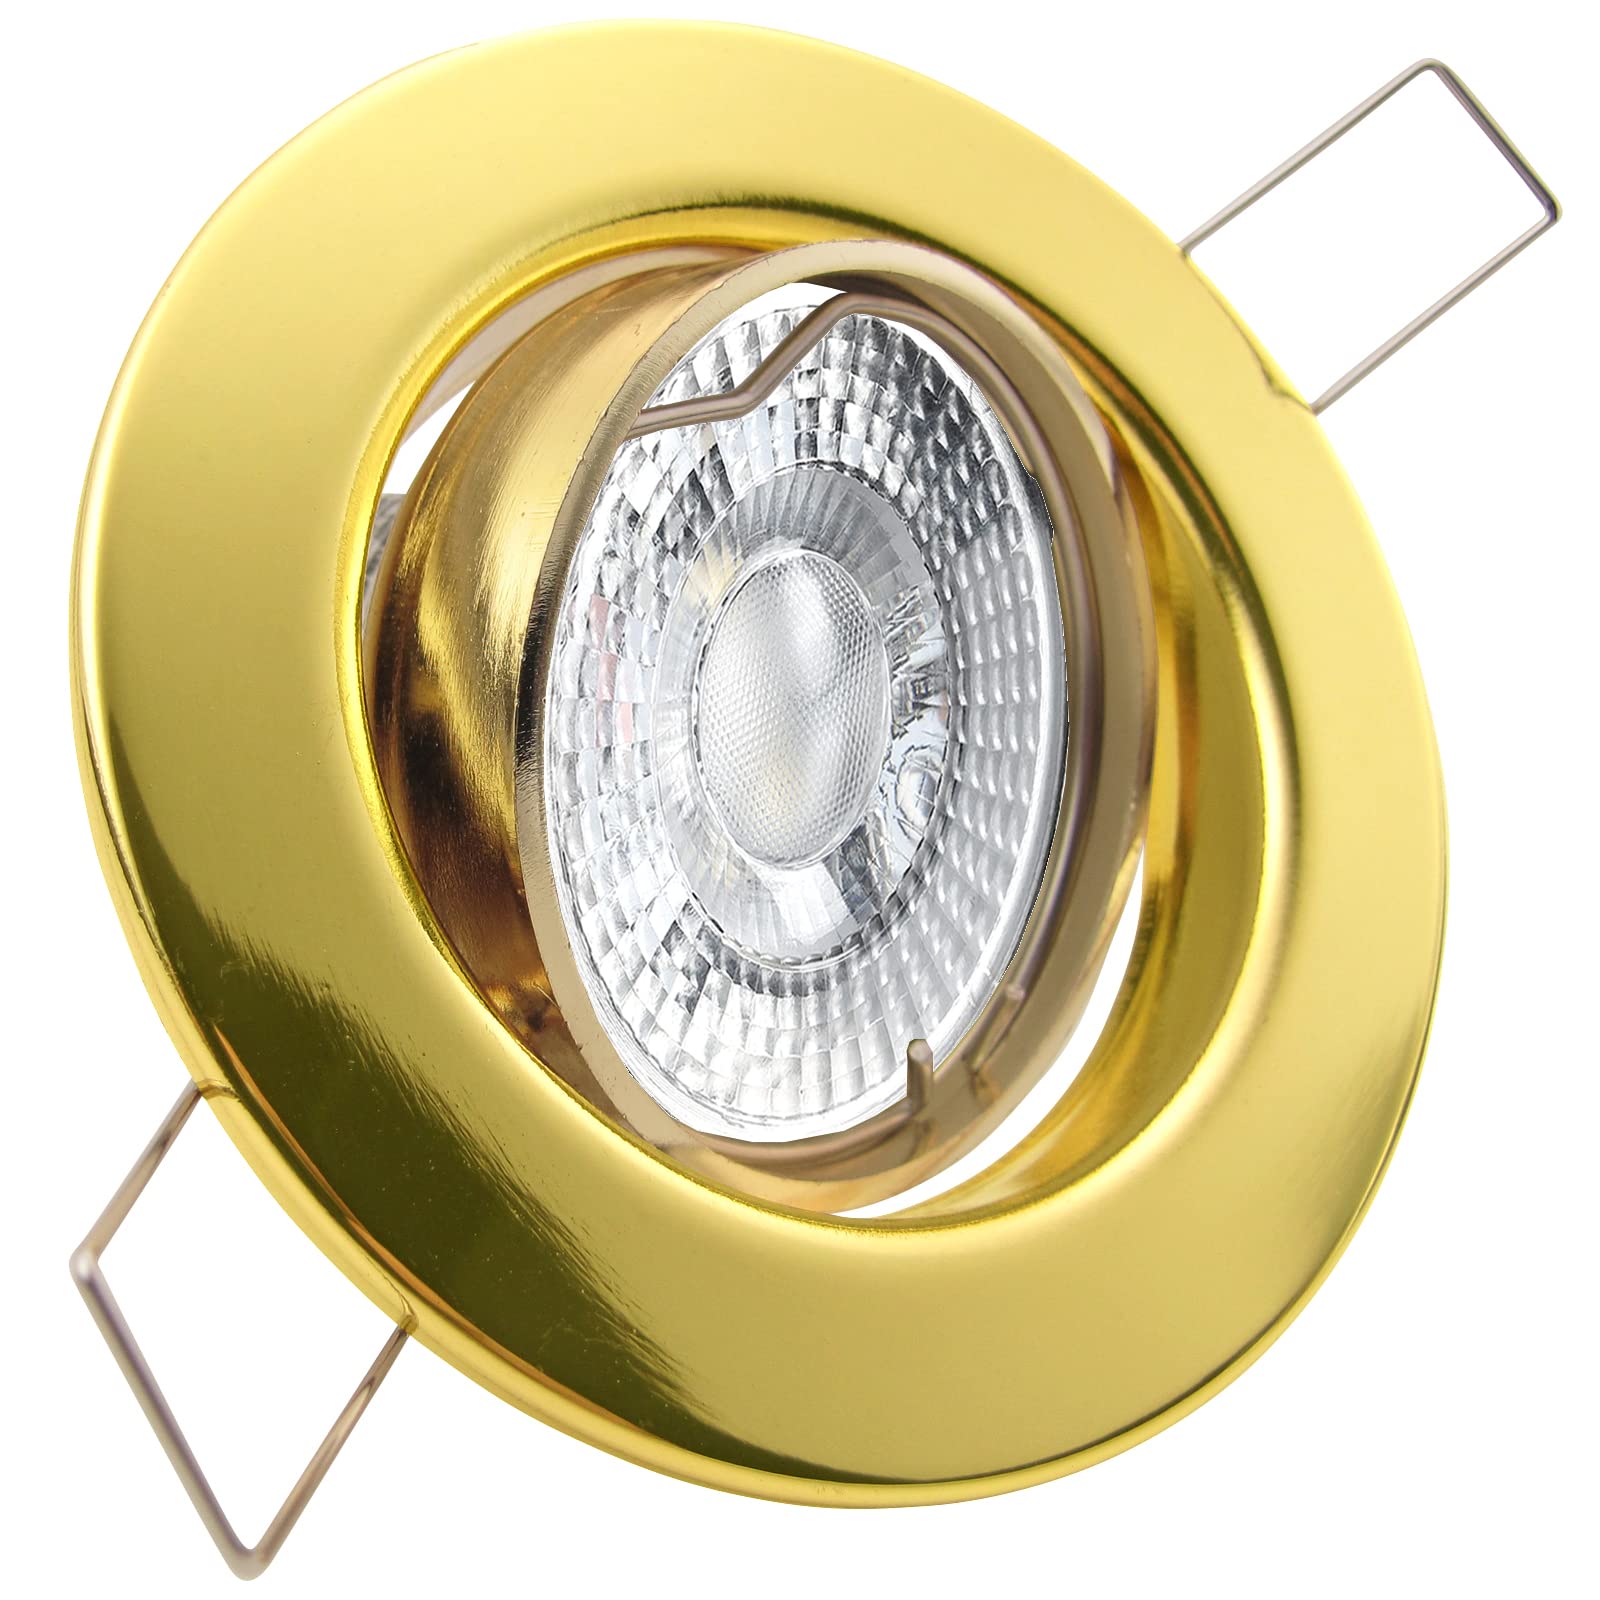 trendlights24 Decora LED Einbaustrahler 230V Gold Messing rund 8er Set - Spots 4W 405 lm 38-45° GU10 Neutralweiß - Decken Einbauleuchte schwenkbar